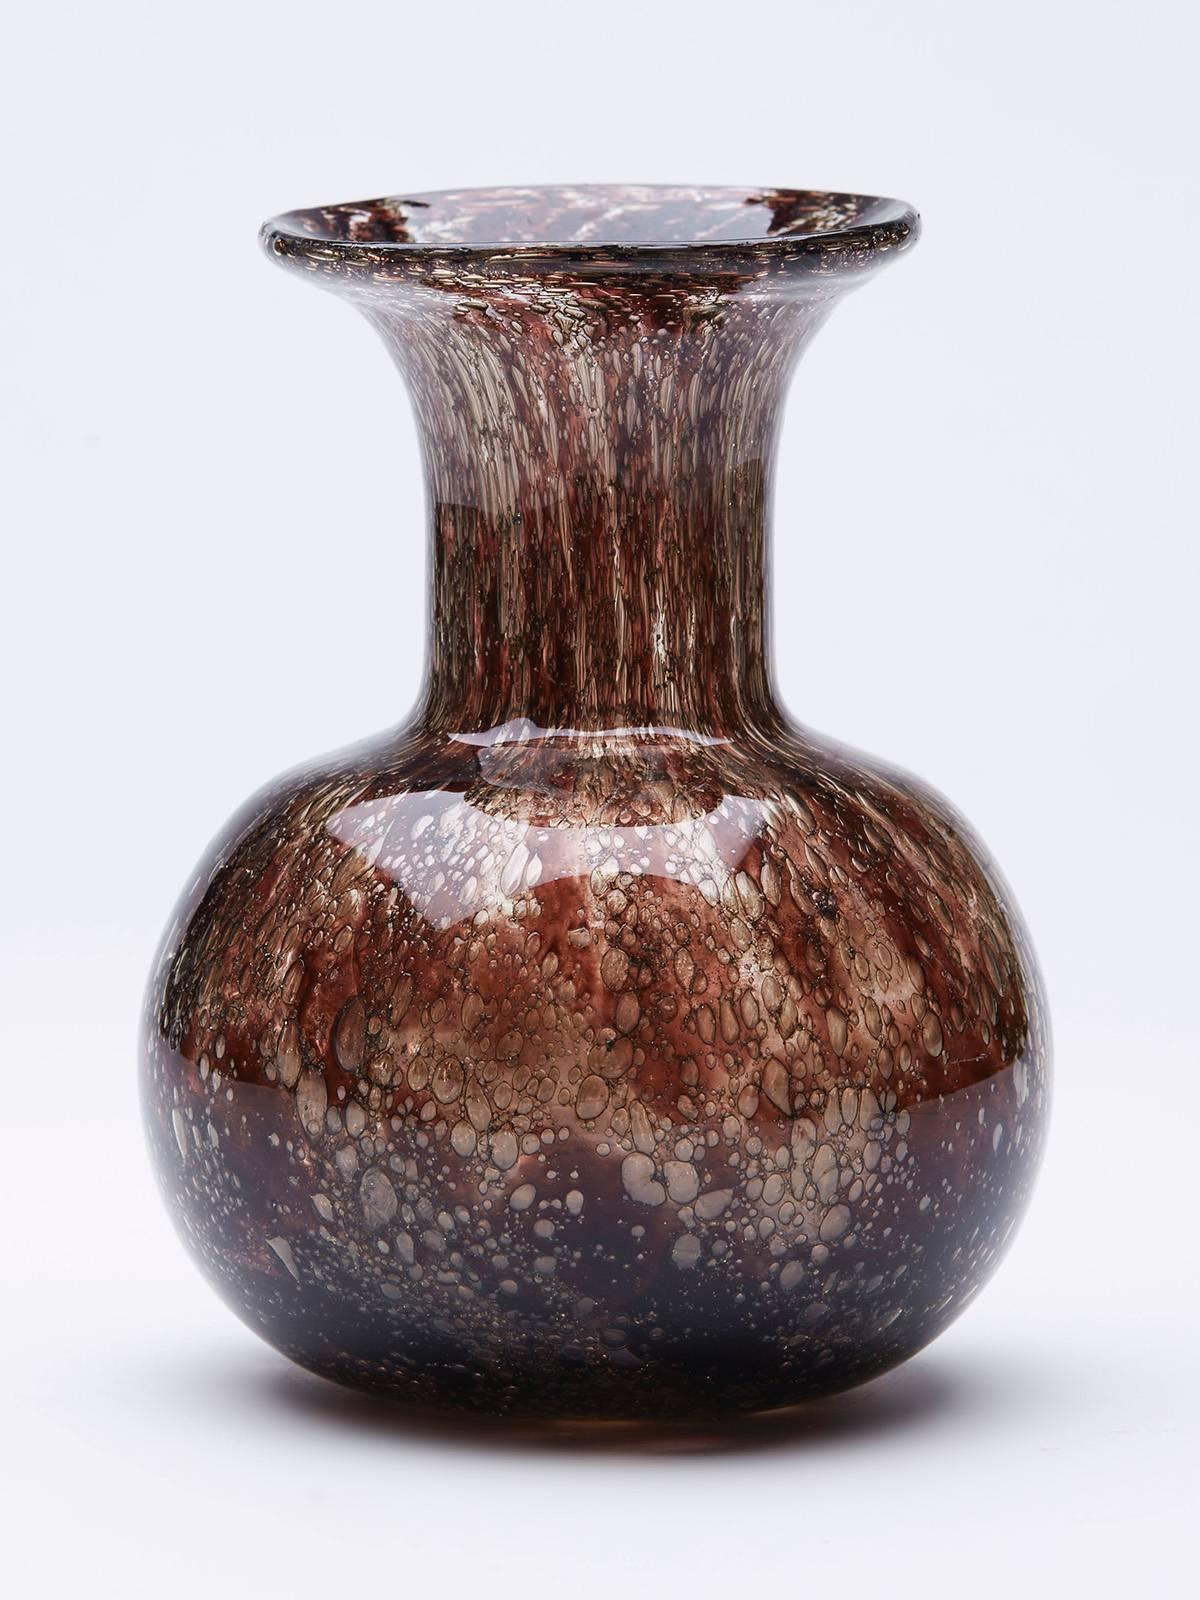 Un vase vintage en verre d'art Murano Effeso avec des inclusions brun rougeâtre dans un fond clair avec des bulles importantes sur le verre conçu par Ercole Barovier pour Barovier & Toso. Le vase a un corps arrondi, un col étroit en entonnoir et un